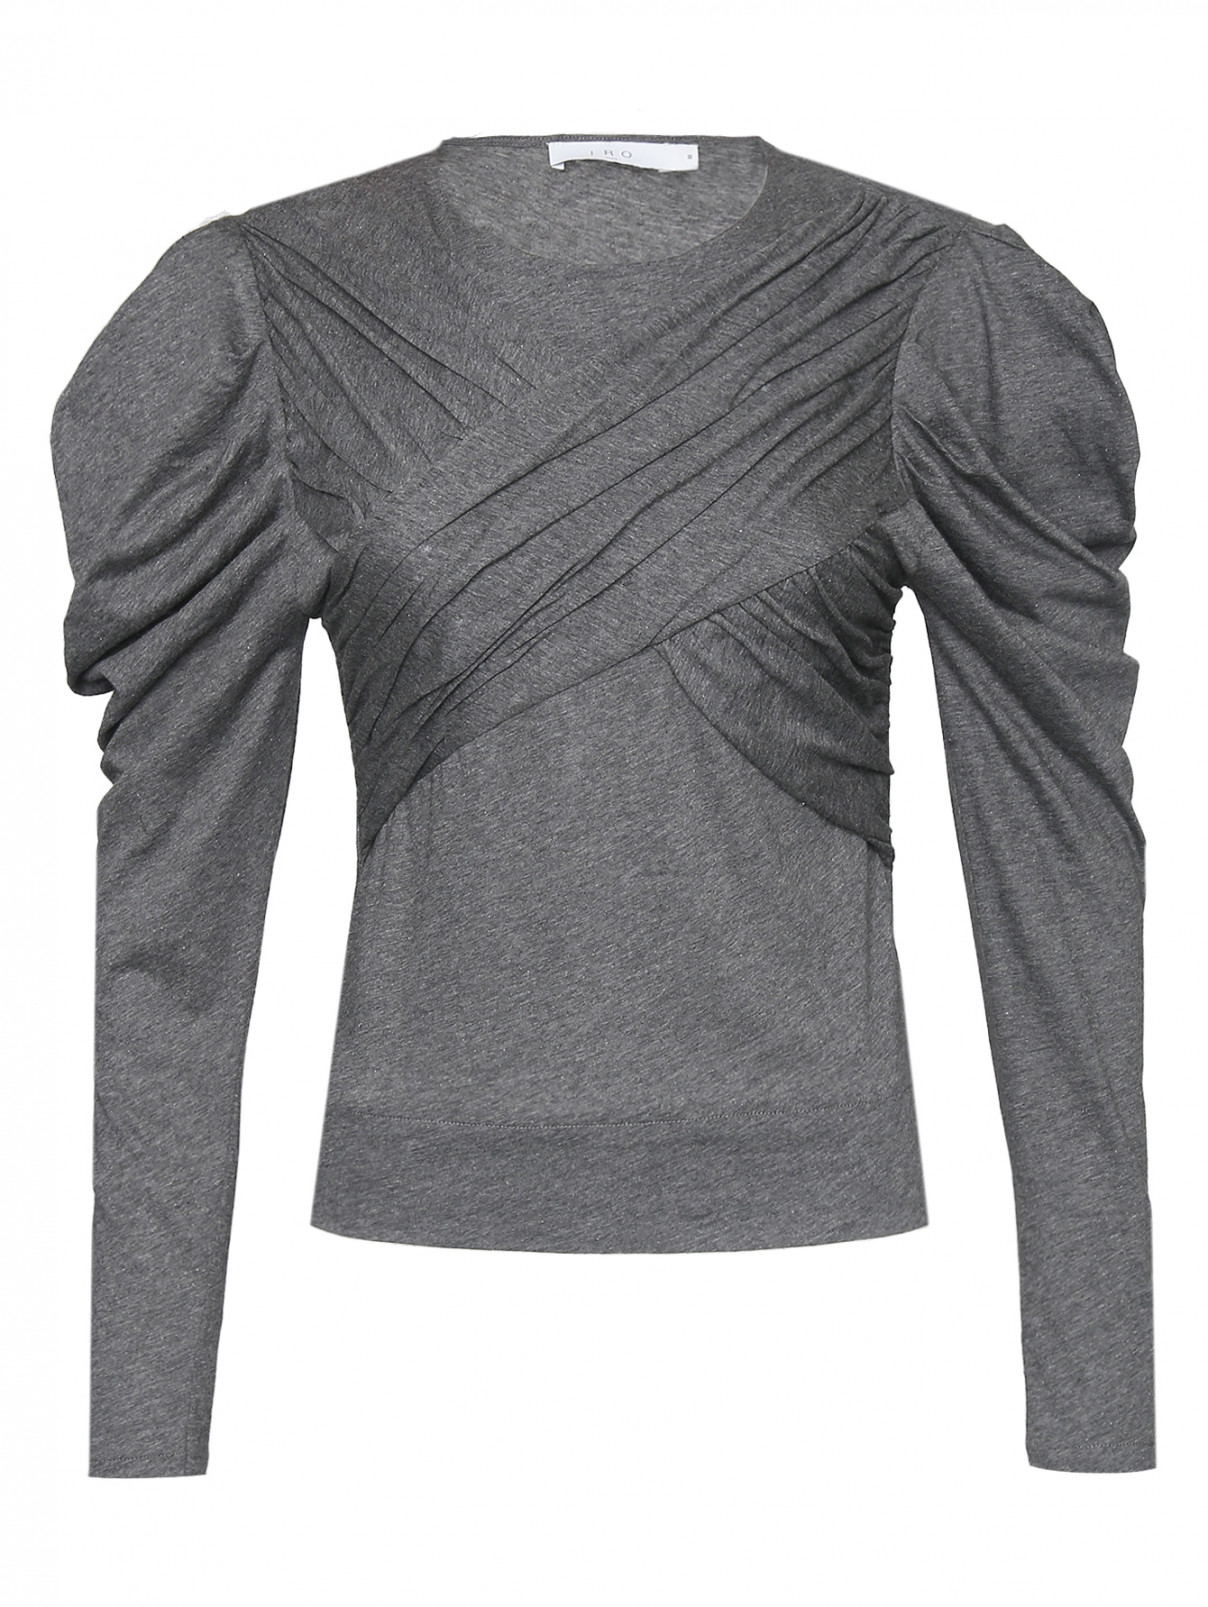 Трикотажная блуза из хлопка Iro  –  Общий вид  – Цвет:  Серый